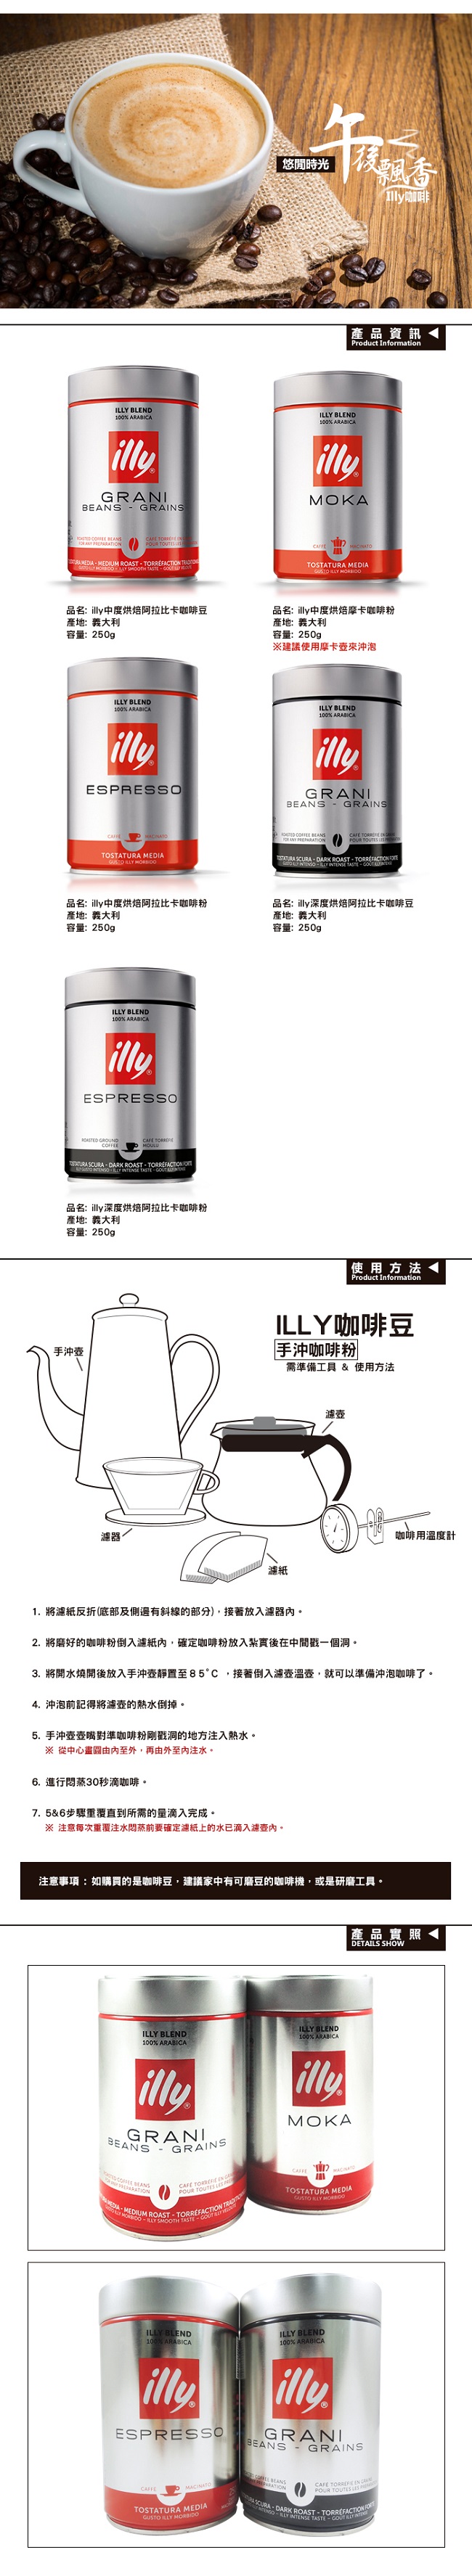 illy 中烘焙ESPRESSO咖啡粉 (250g)